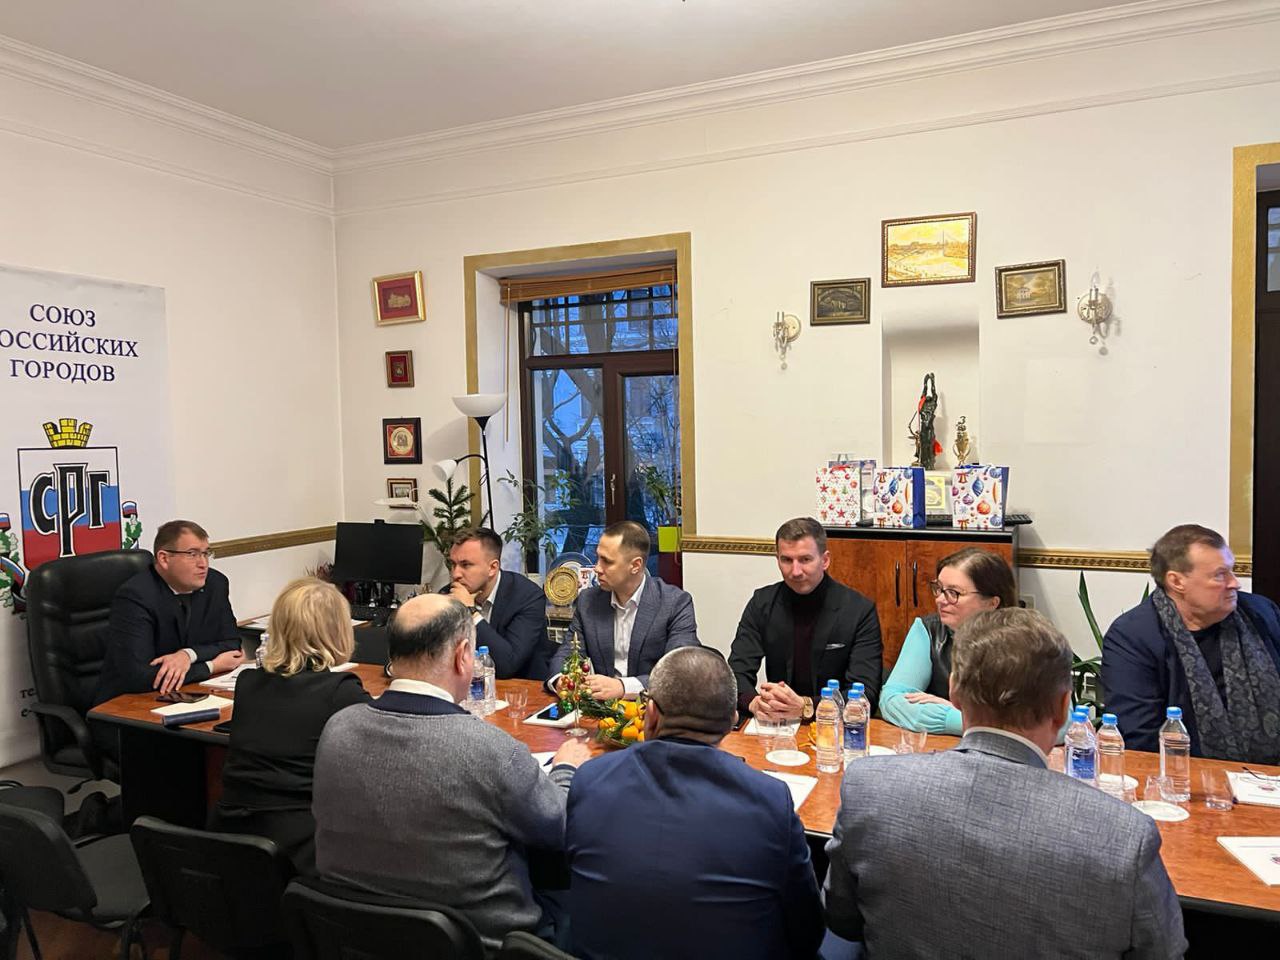 Состоялось заседание Экспертного совета Союза российских городов